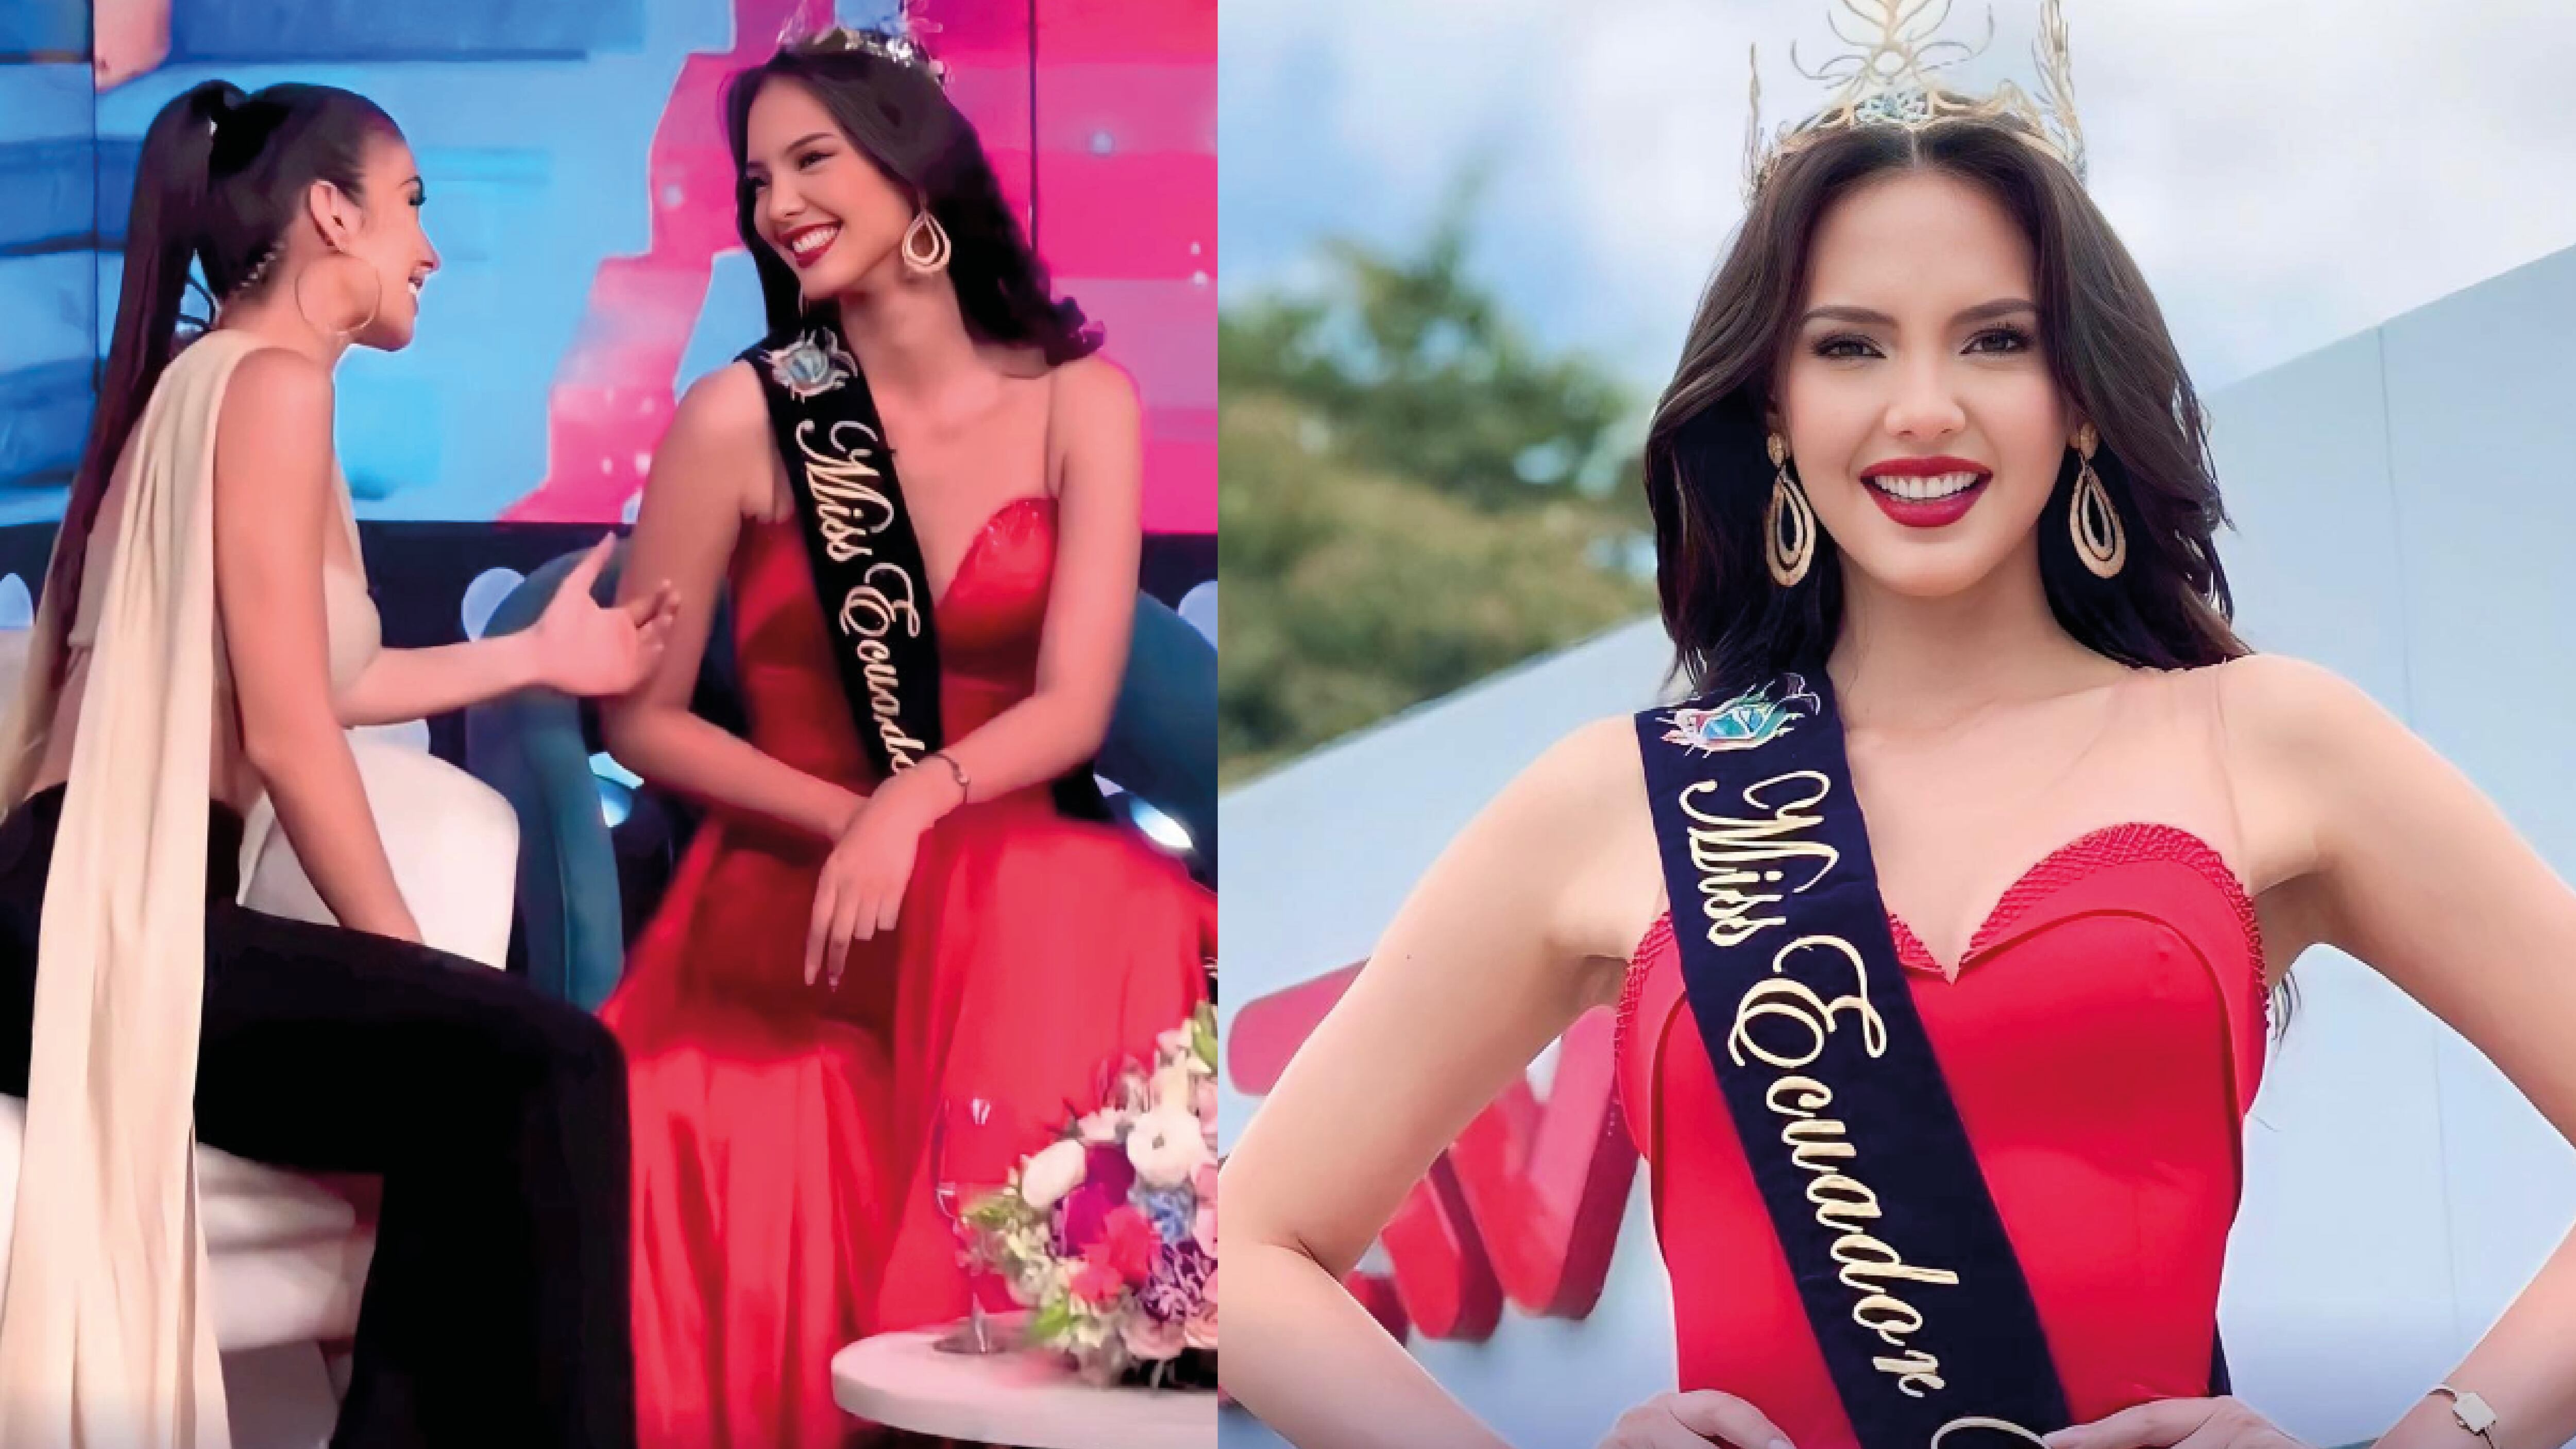 ¡No te olvides el shampoo! El consejo de Virginia Limongi a la nueva Miss Ecuador, Delary Stoffers